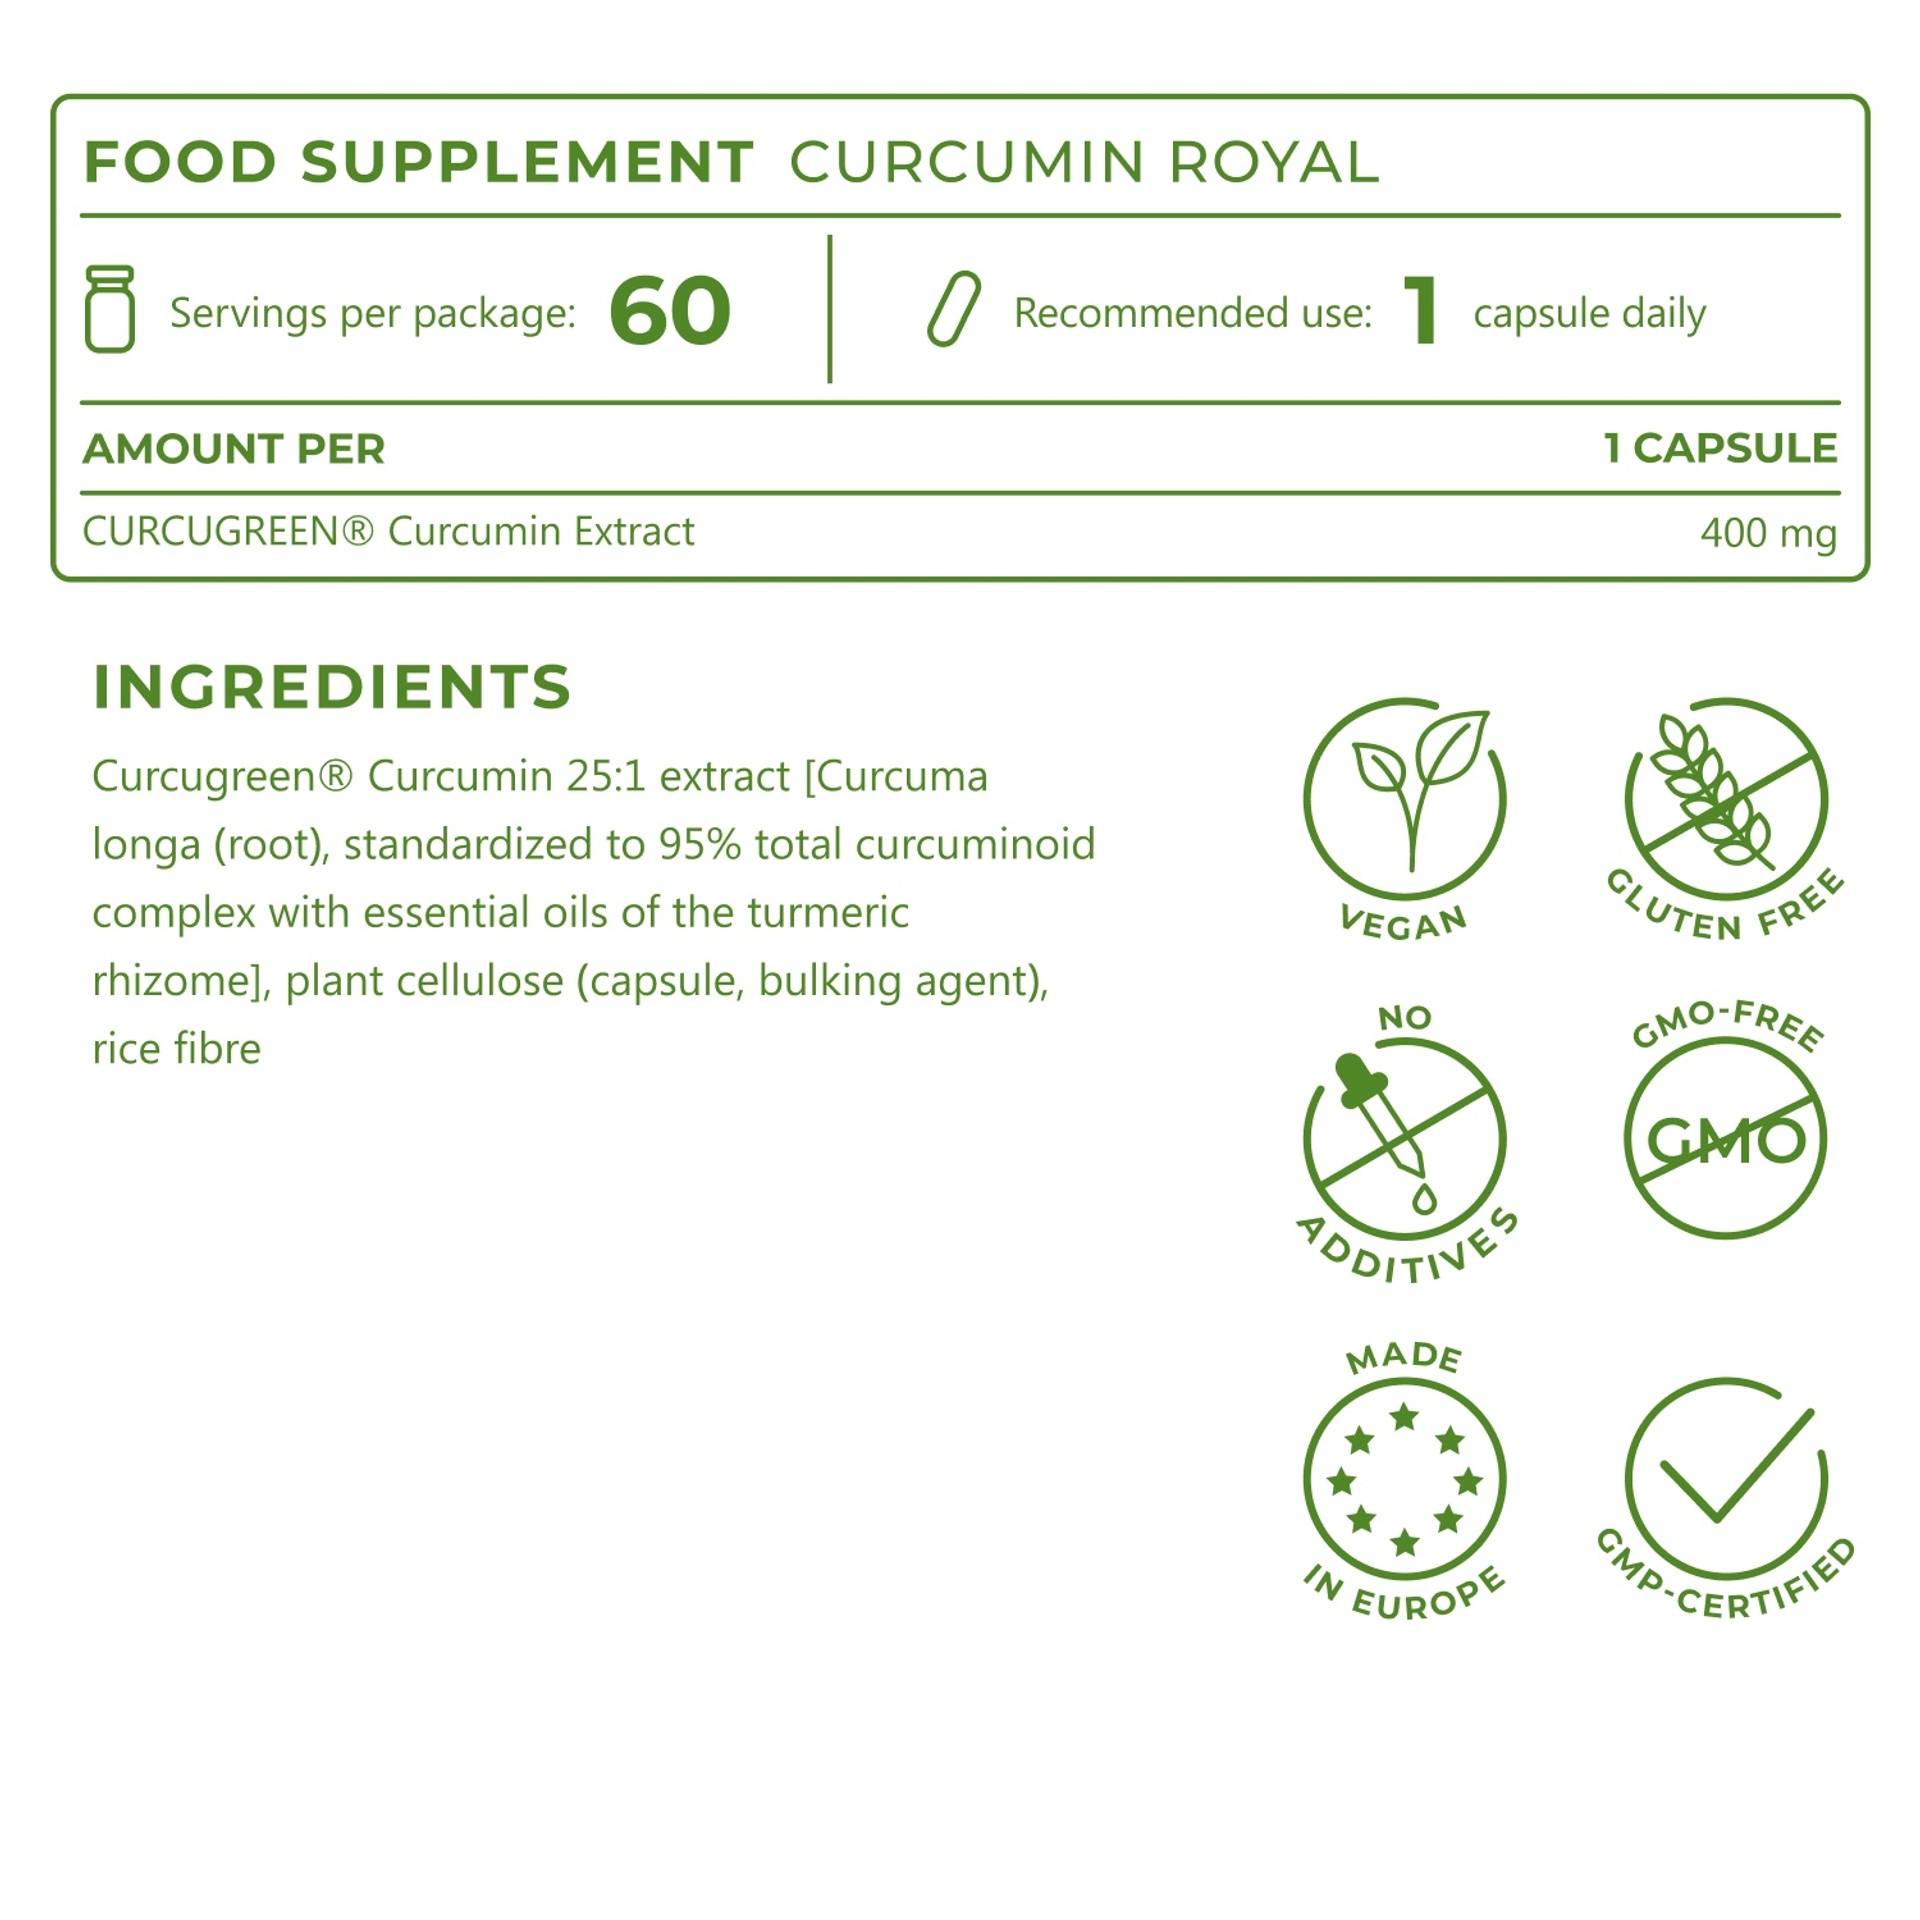 5_EN_Ingredients_Curcumin Royal_6927-11.png